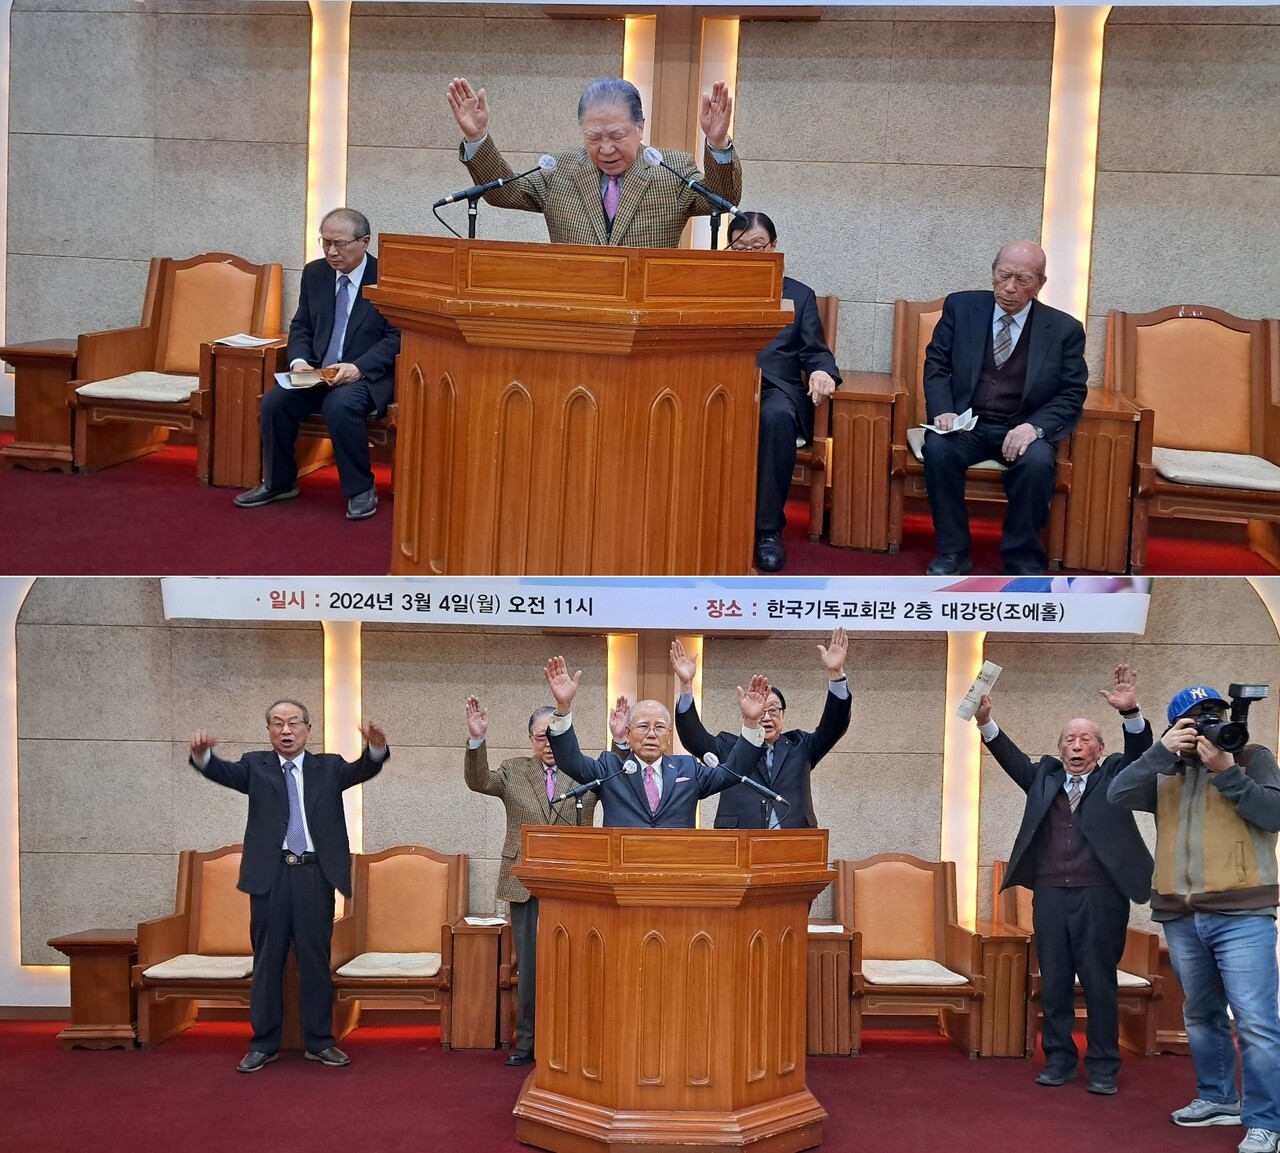 축도하는 김동권 목사(위)와 만세삼창을 부르는 민승 목사(아래).